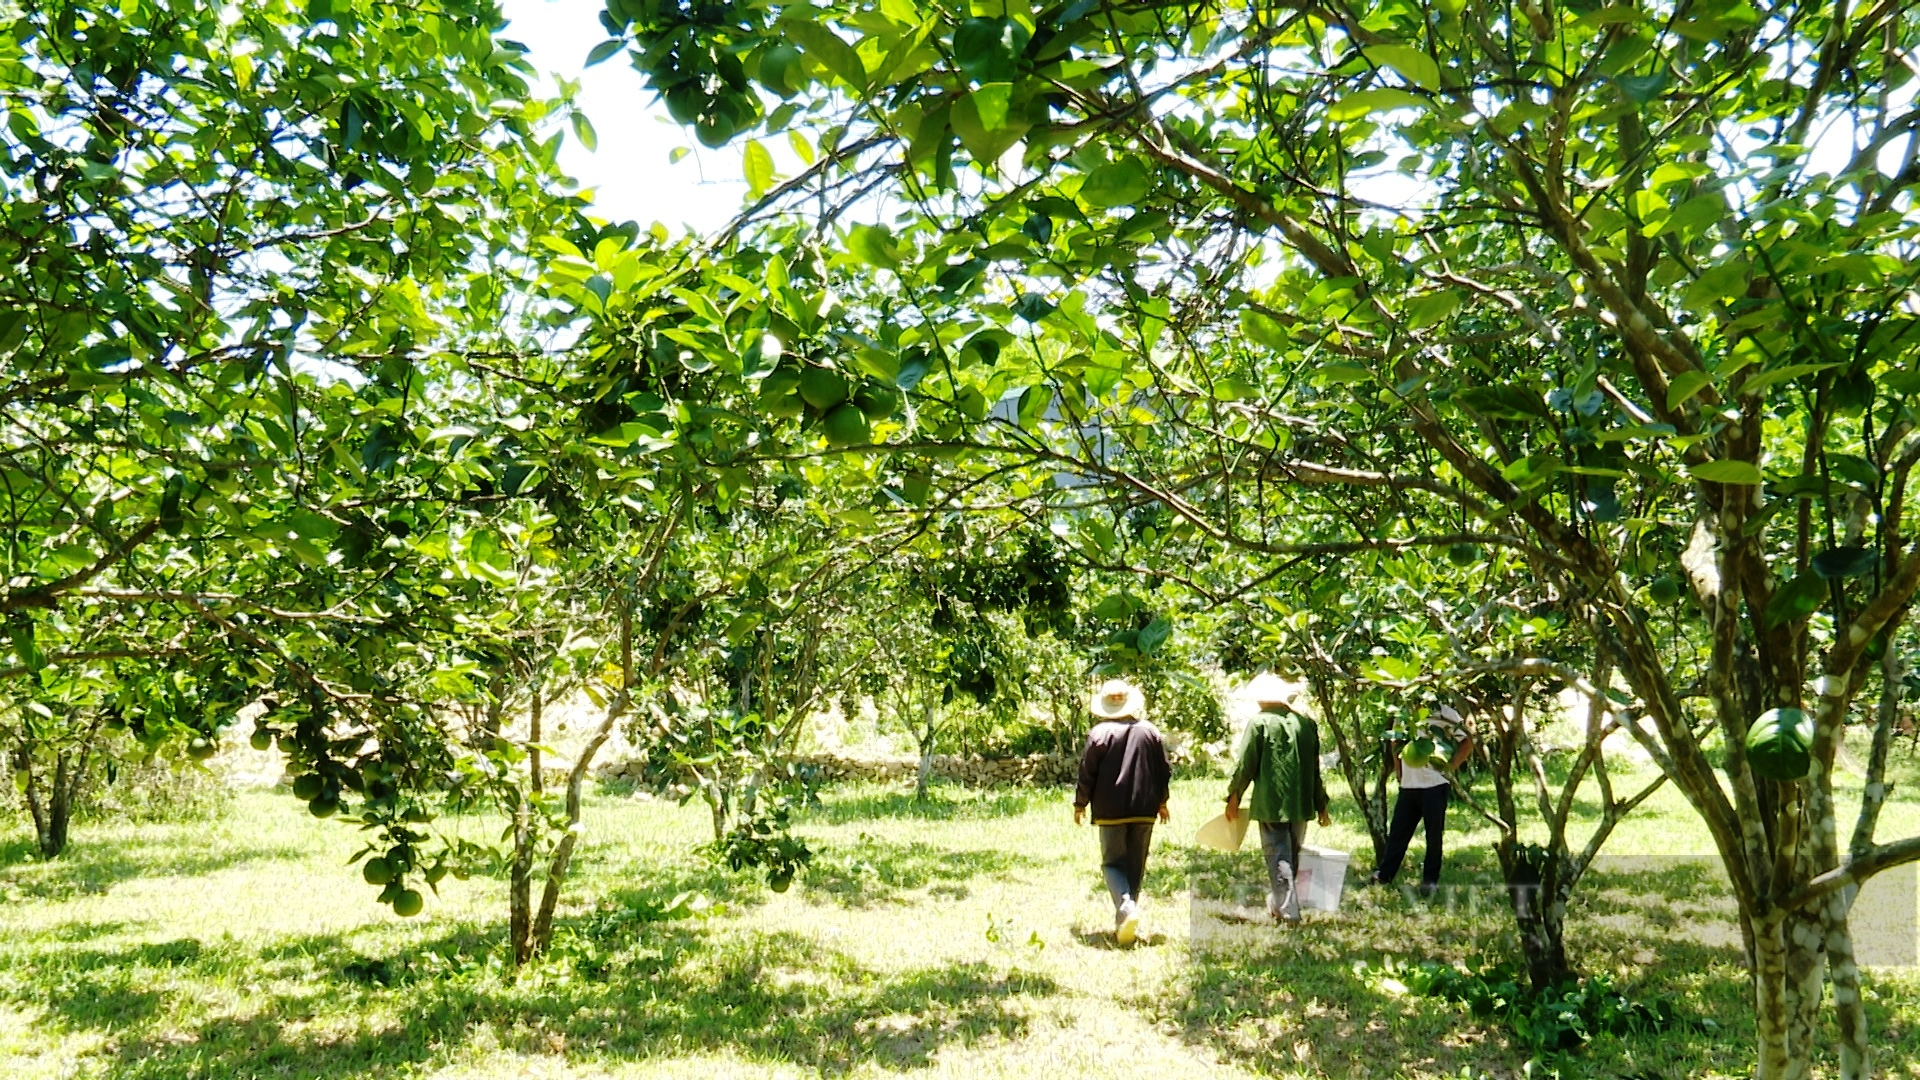  Xây dựng nông thôn mới ở Tiên Phước: Lợi thế từ kinh tế vườn, có nông dân thu cả trăm triệu đồng/năm  - Ảnh 8.